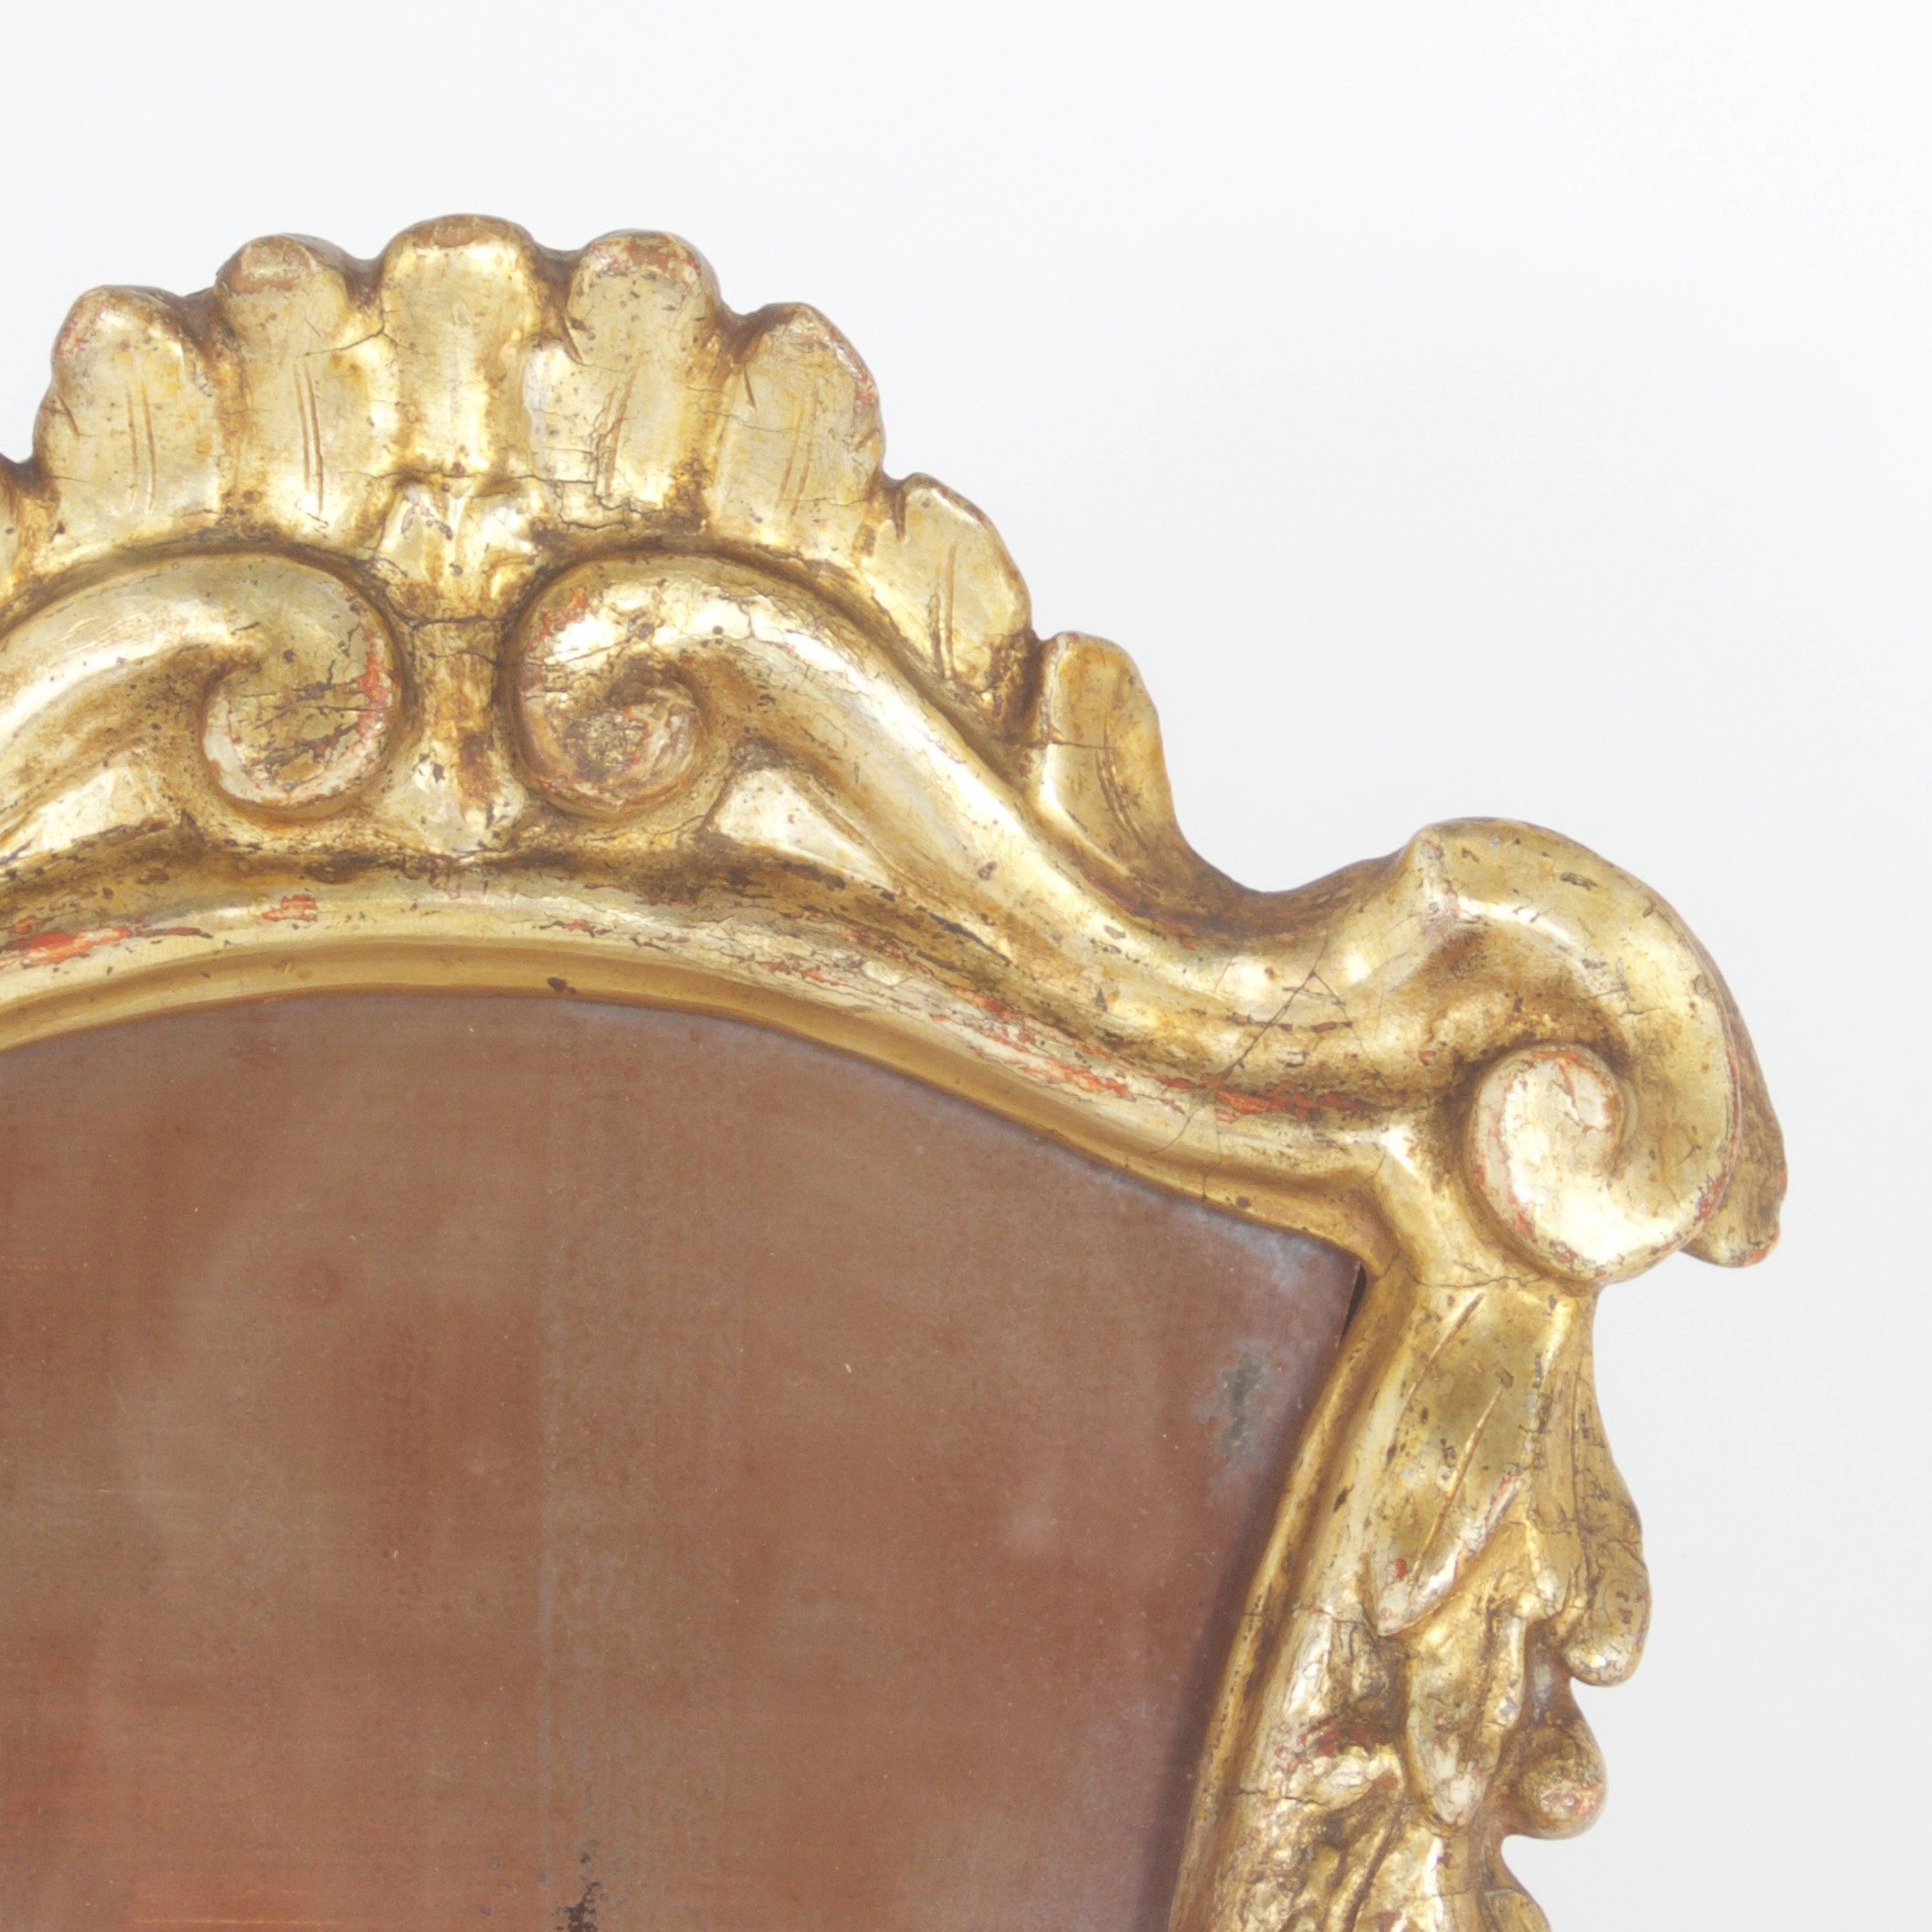 Charmant cadre italien ancien sculpté et doré présenté sur un chevalet en bois, avec un miroir si dégradé que nous l'appelons un cadre seulement !  Le cadre est en bois sculpté, gessoïsé et doré avec une patine du vieux monde maintenant usée par le